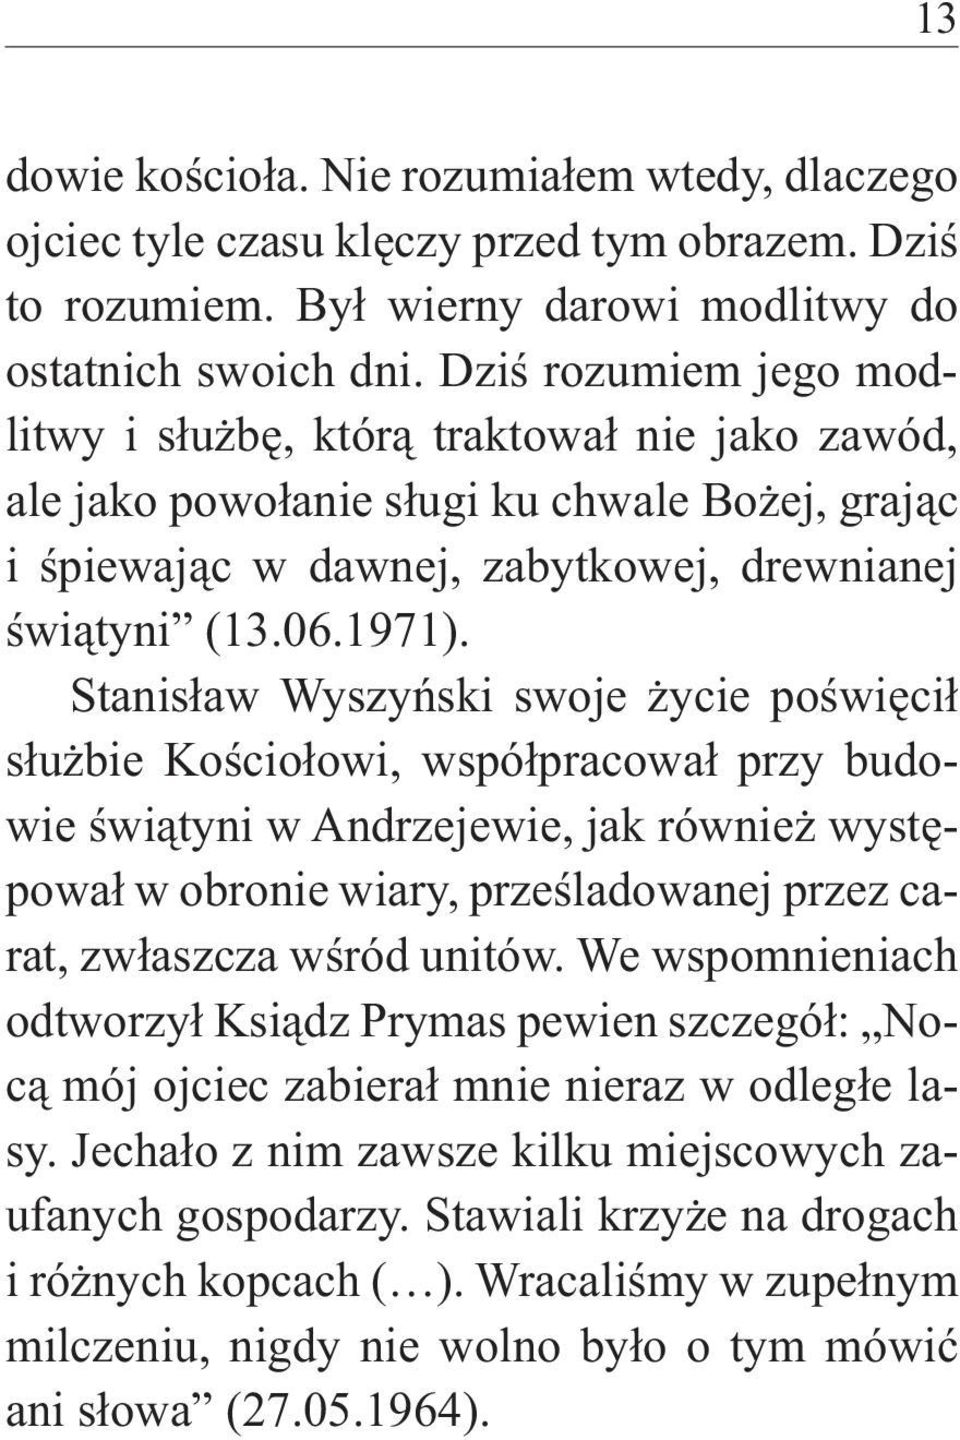 Stanisław Wyszyński swoje życie poświęcił służbie Kościołowi, współpracował przy budowie świątyni w Andrzejewie, jak również występował w obronie wiary, prześladowanej przez carat, zwłaszcza wśród